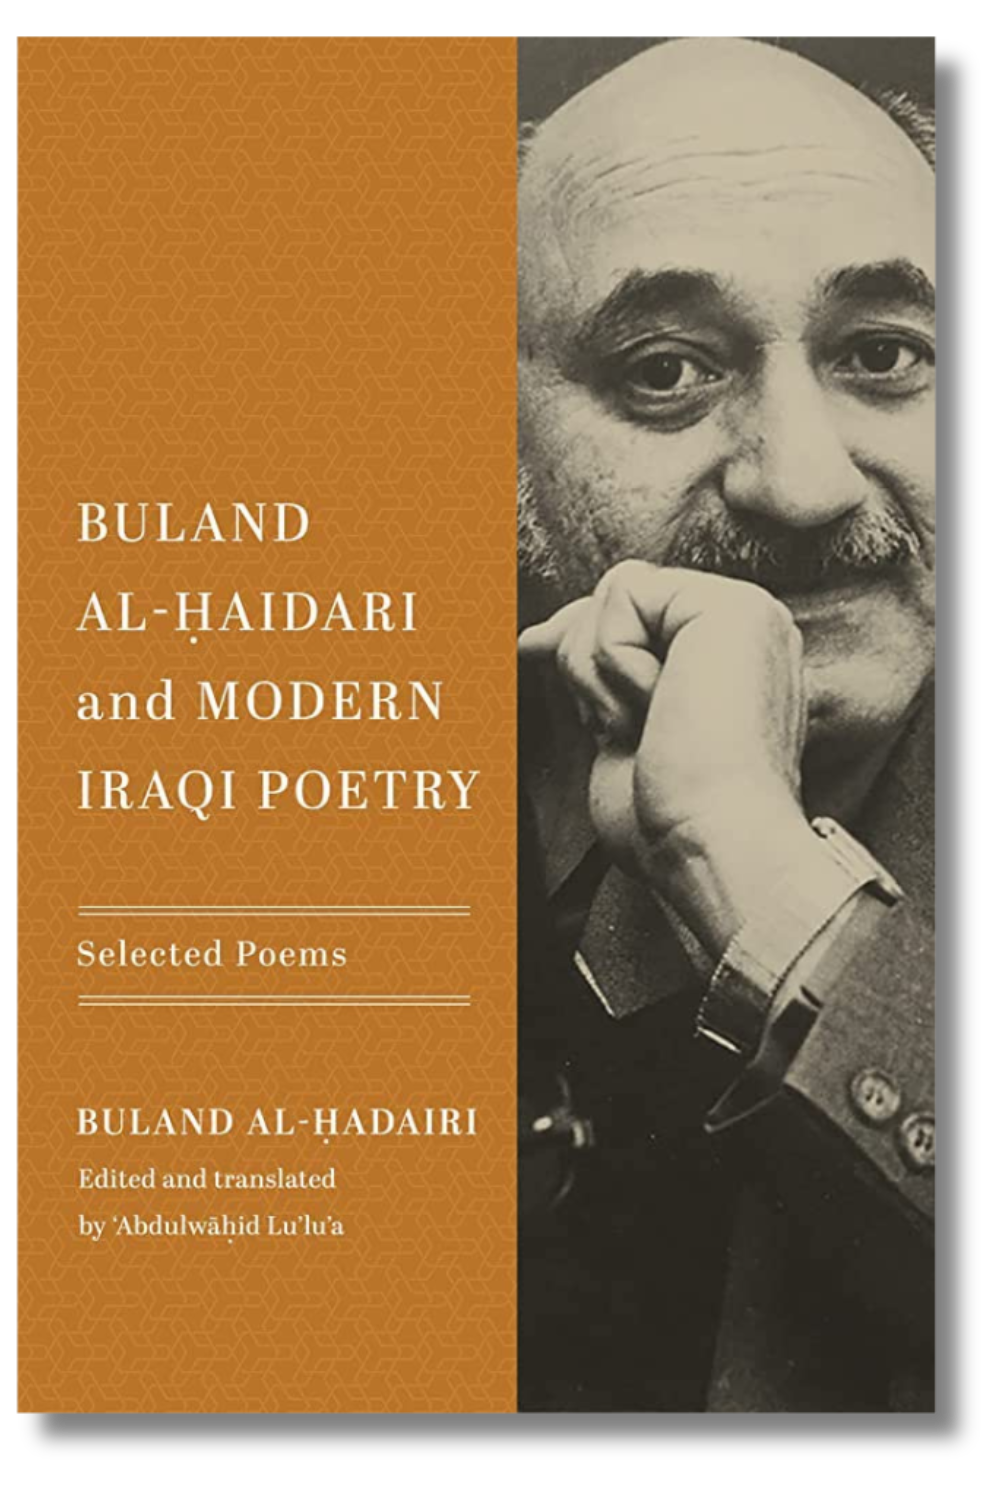 The cover of "Buland Al-Haidari and Modern Iraqi Poetry" by Buland Al-Haidari, edited and translated by ʻAbdulwāḥid Lu’lu’a